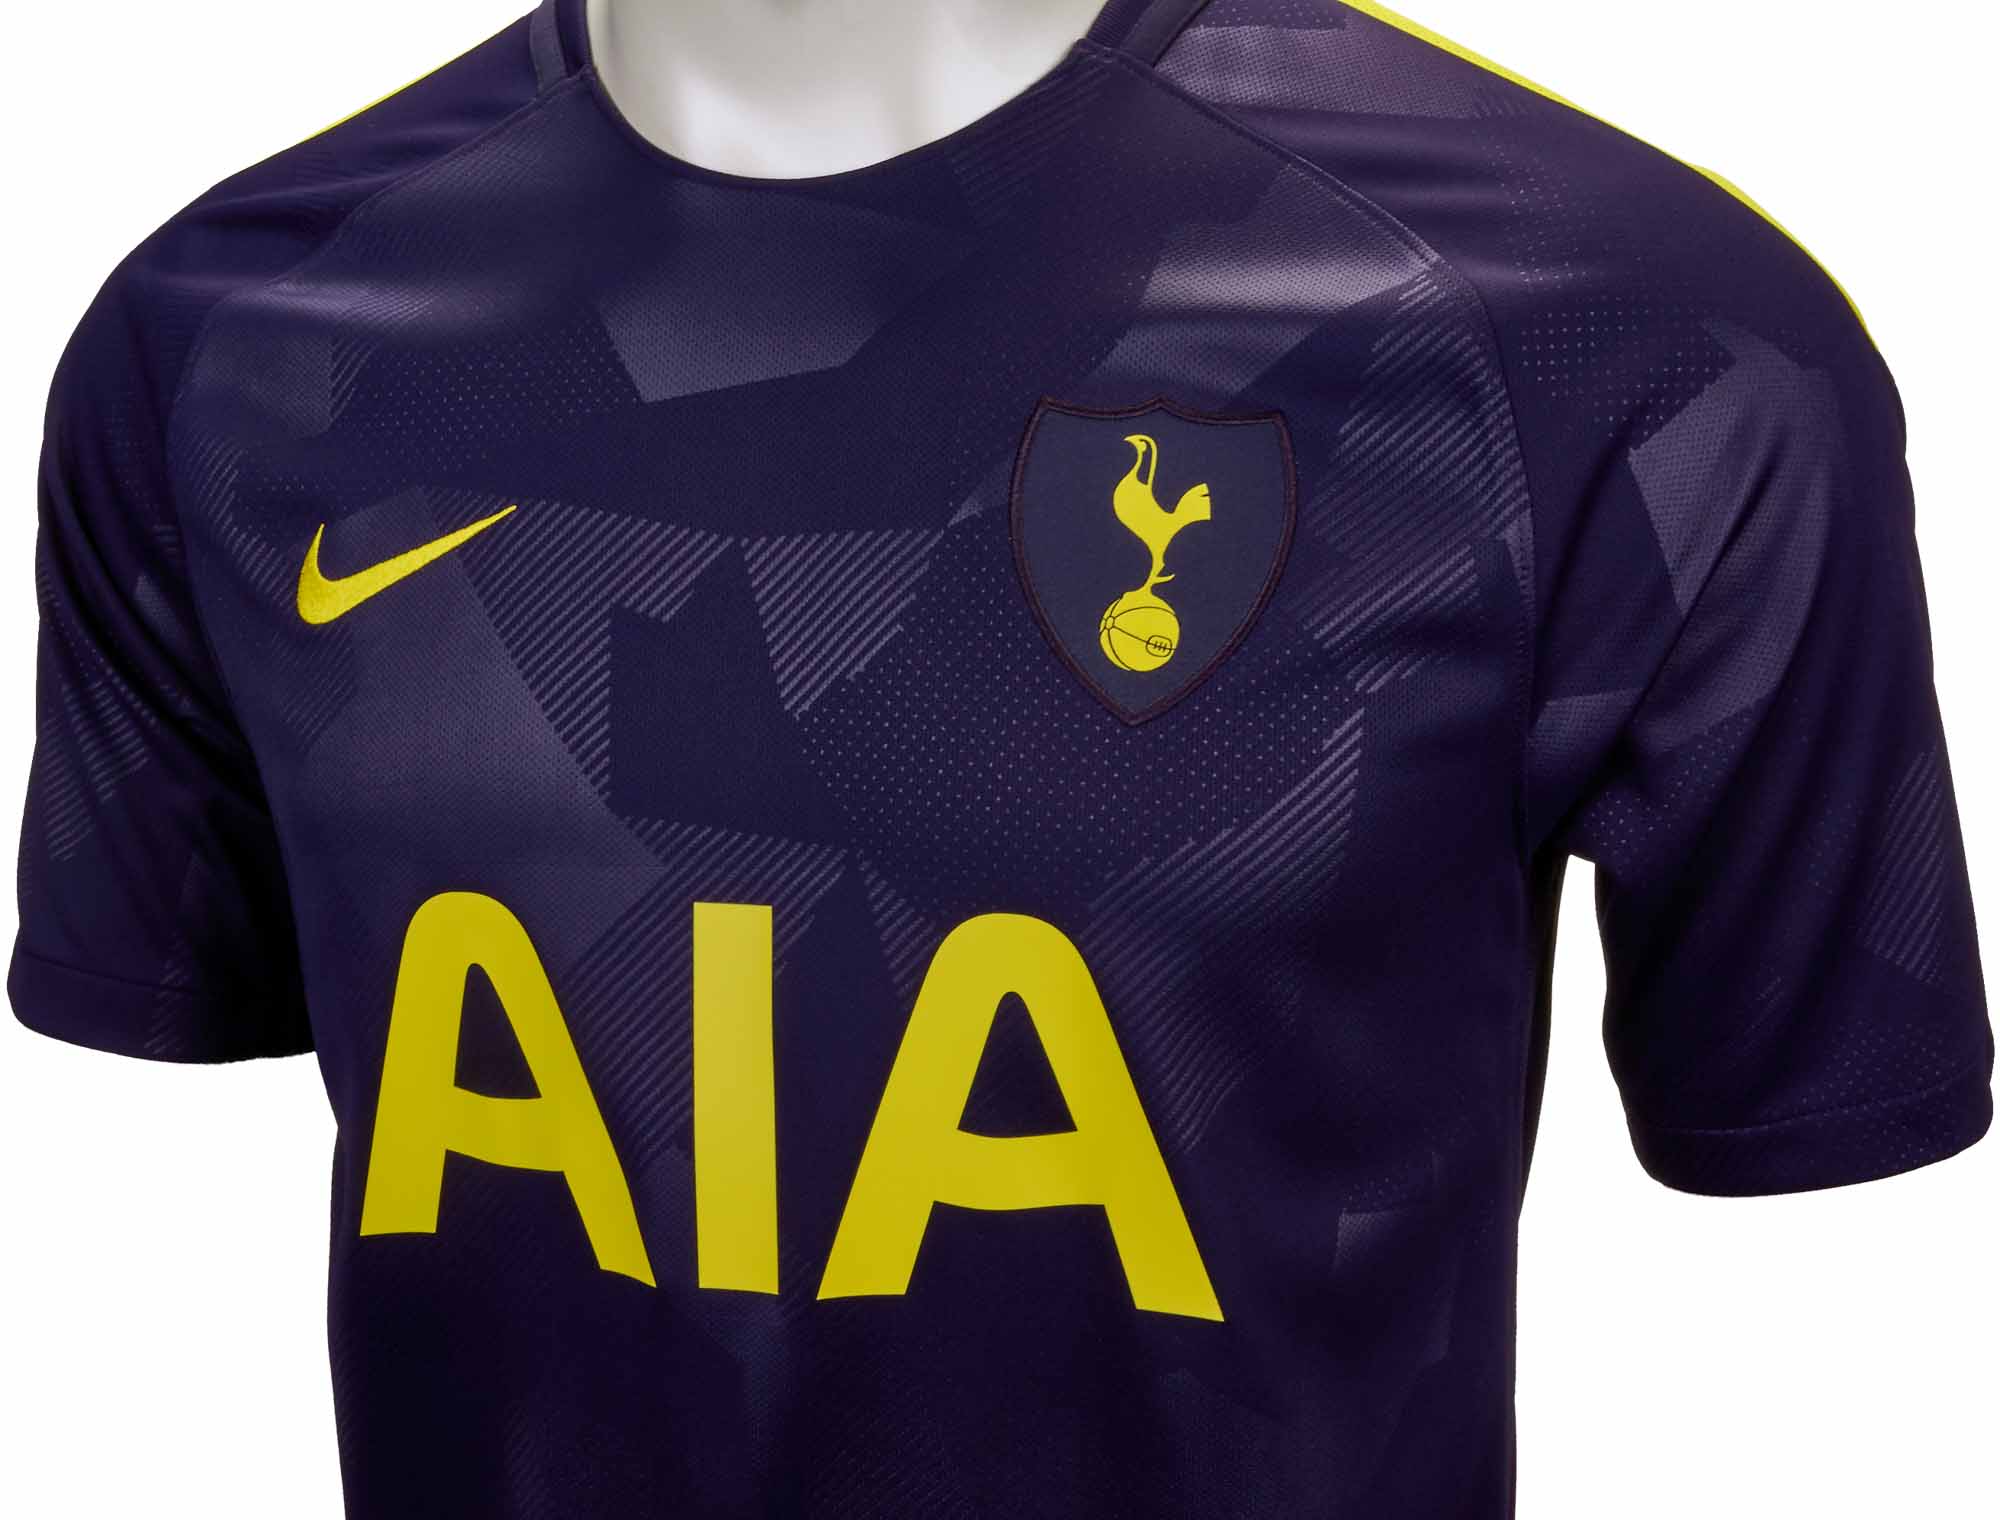 2017/18 Tottenham Away Football Shirt / Old Official Soccer Jersey